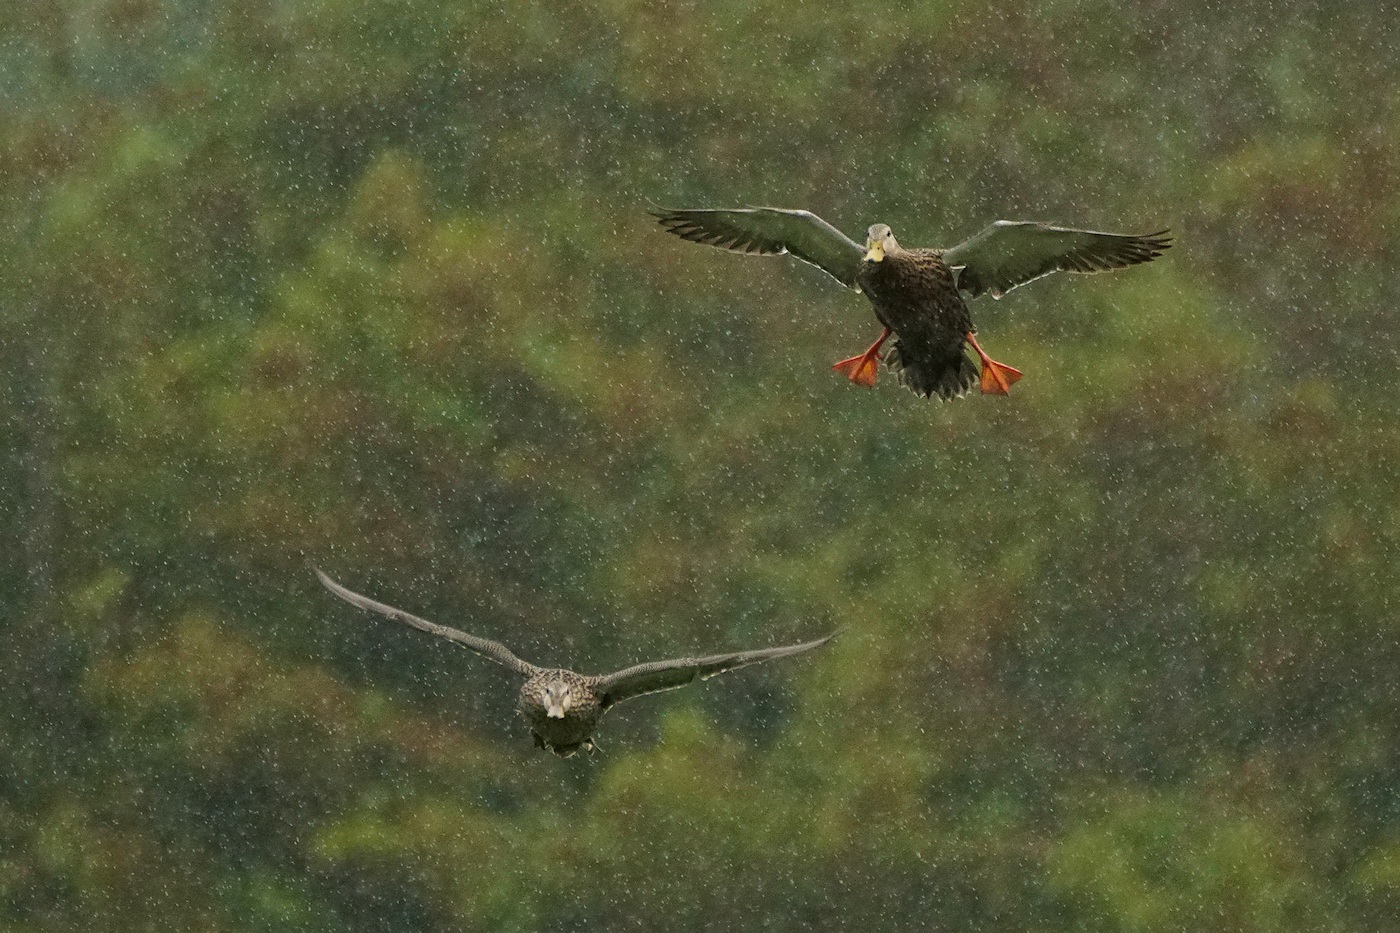 Mottled ducks flying in the rain